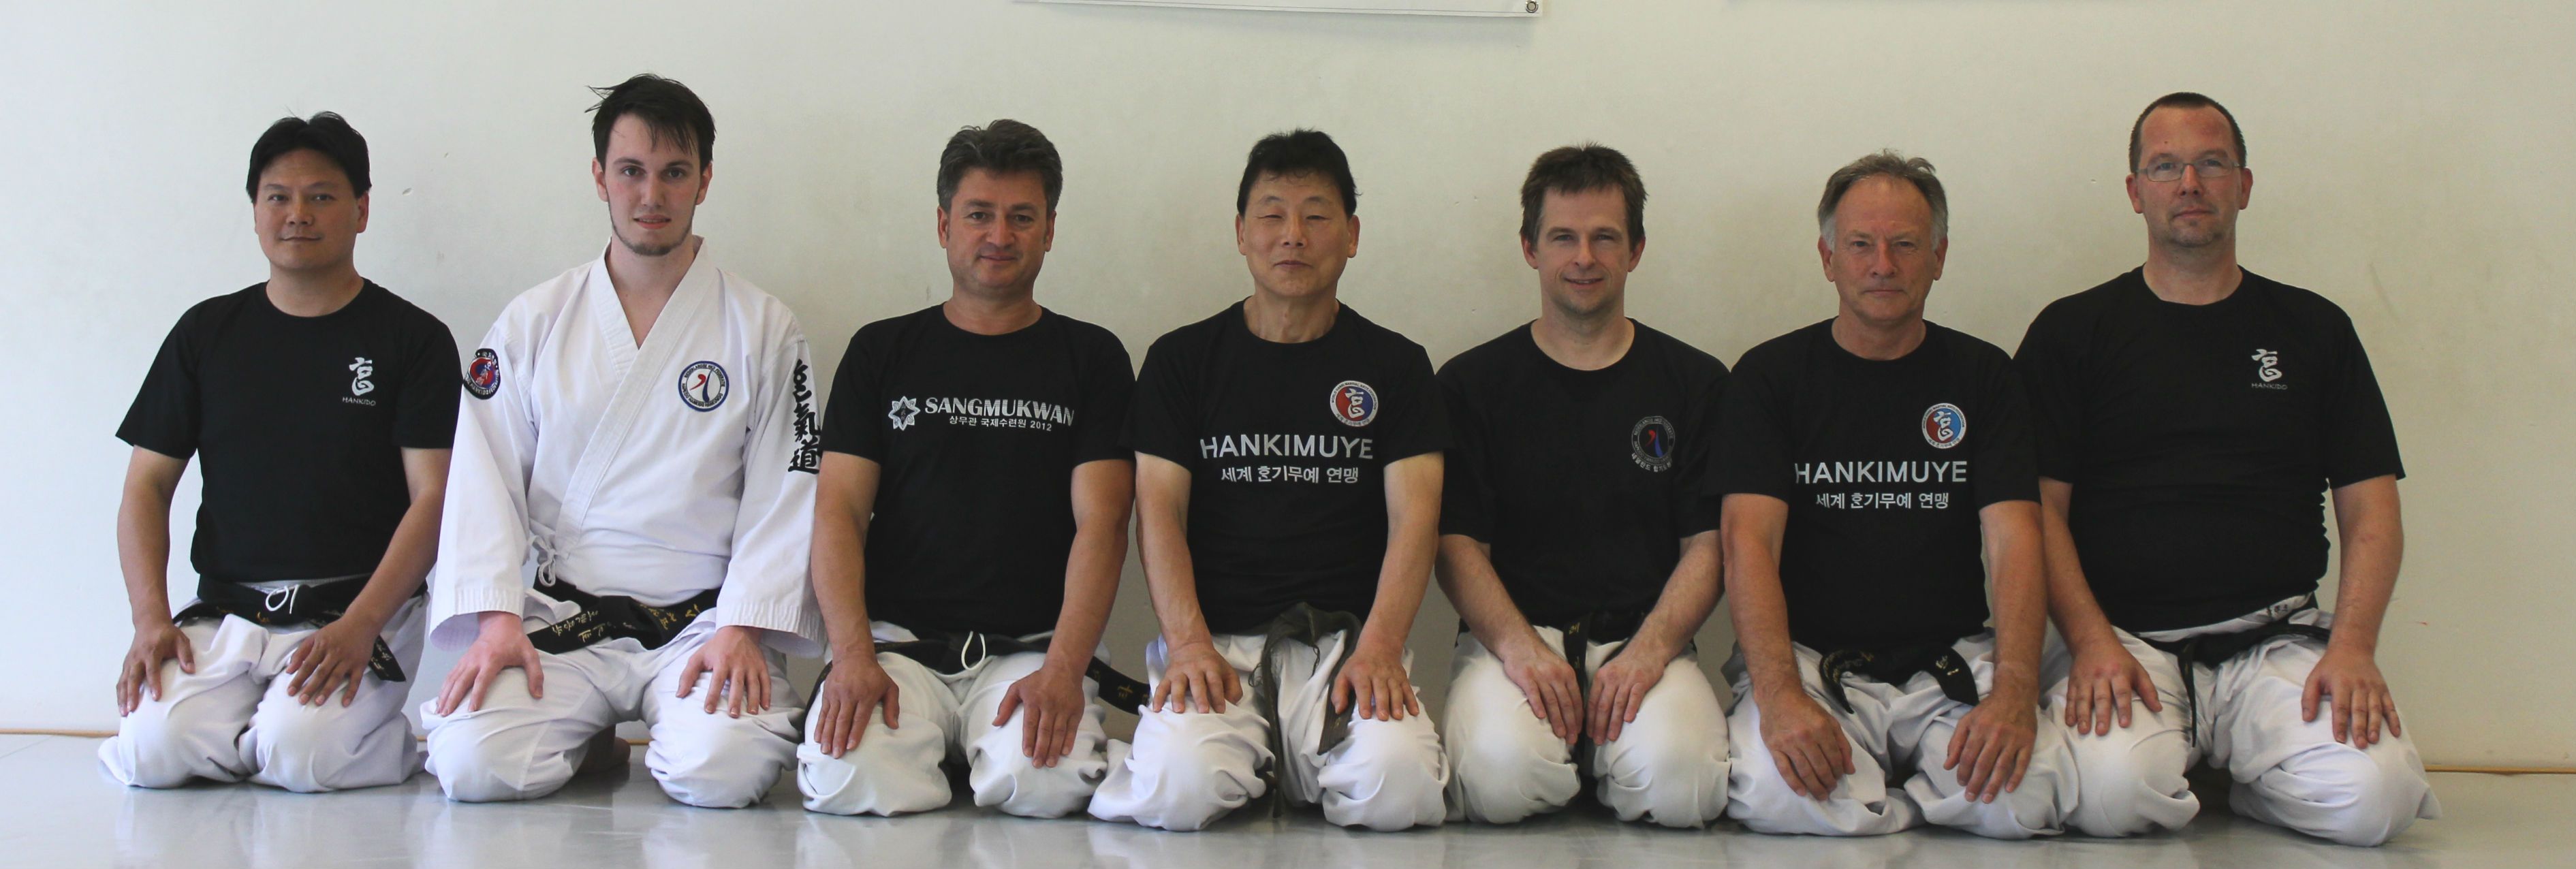 instructors